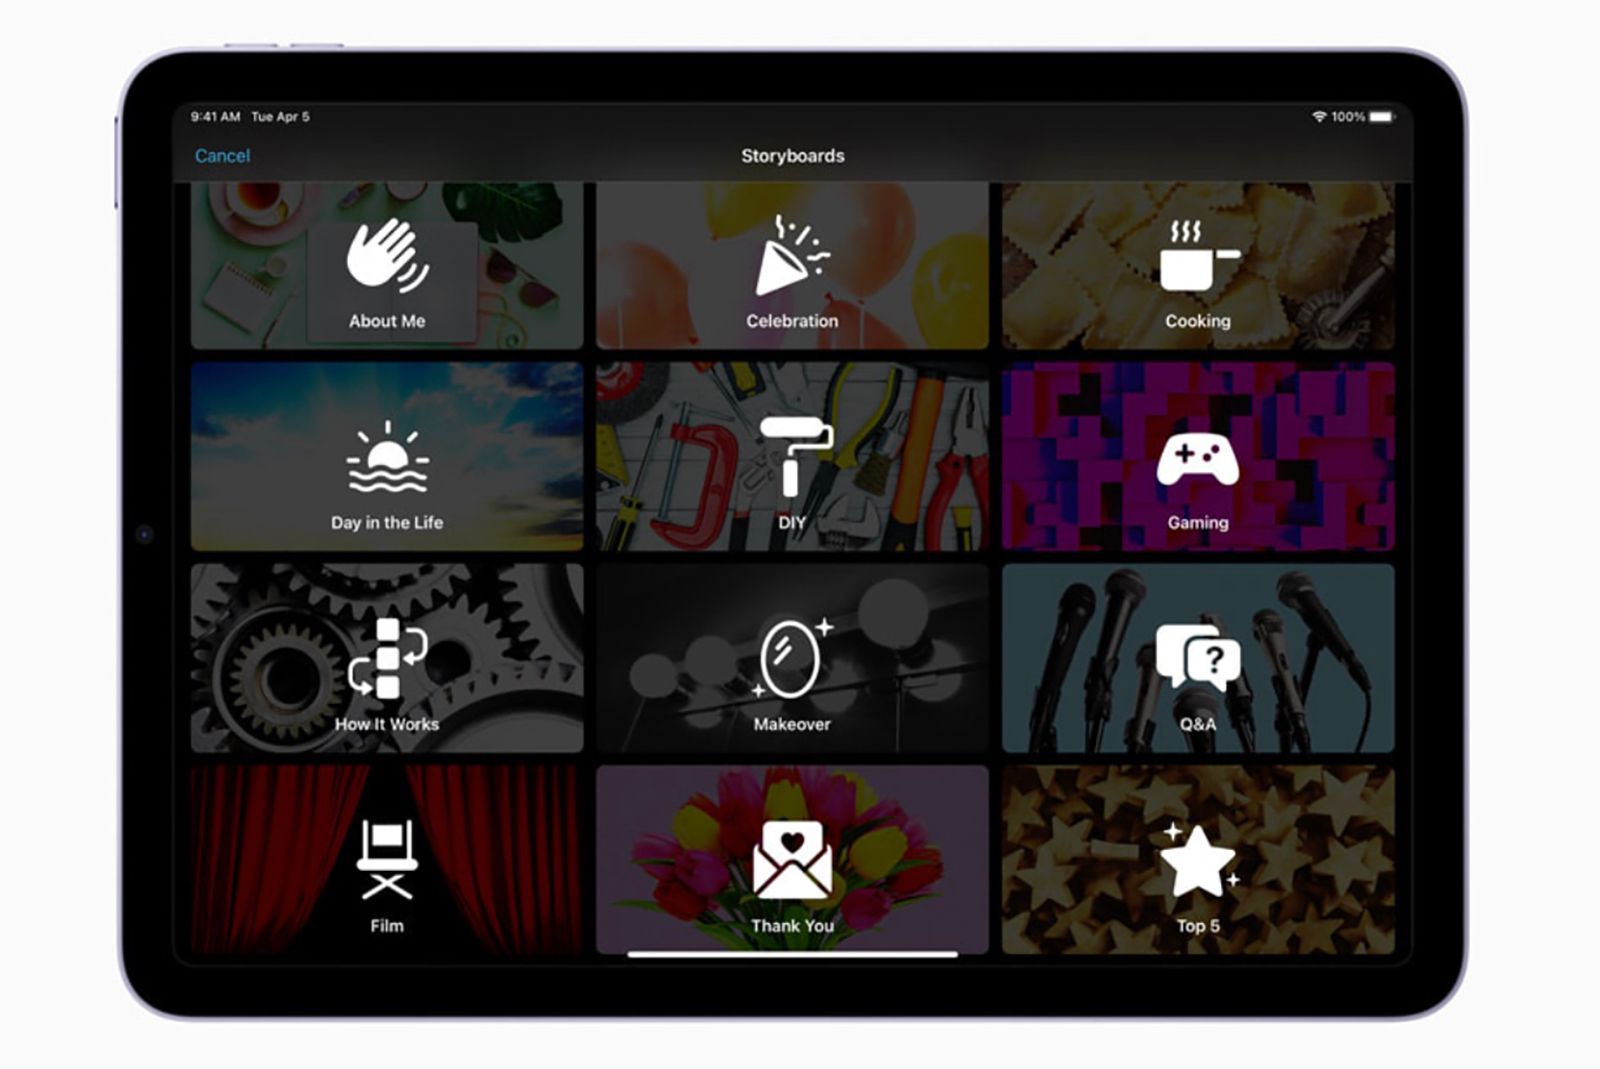 New Apple iMovie update: What's new in iMovie 3.0? photo 3